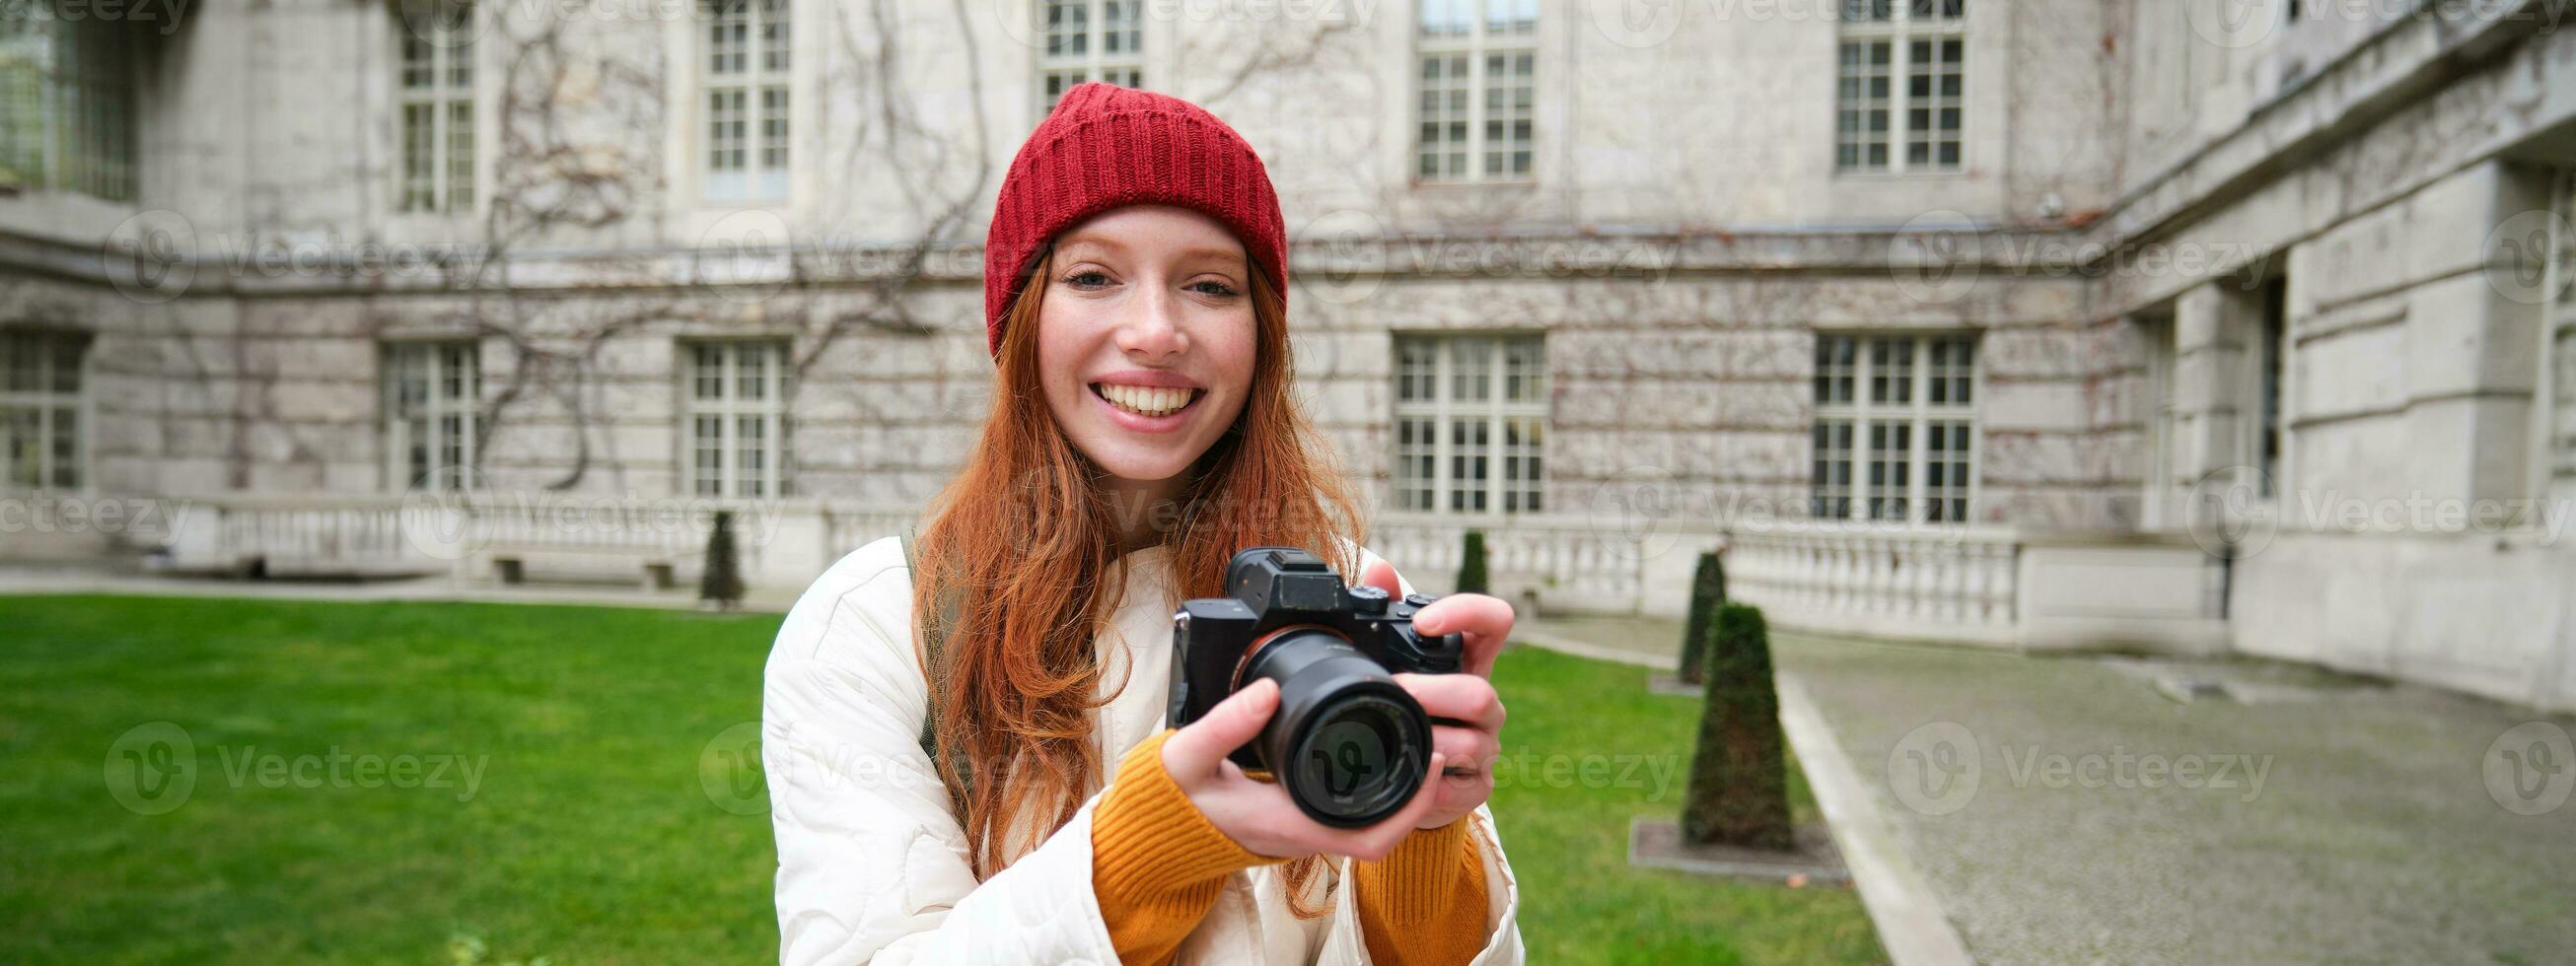 rödhårig flicka fotograf tar foton på professionell kamera utomhus, fångar gatustil skott, utseende upphetsad medan tar bilder